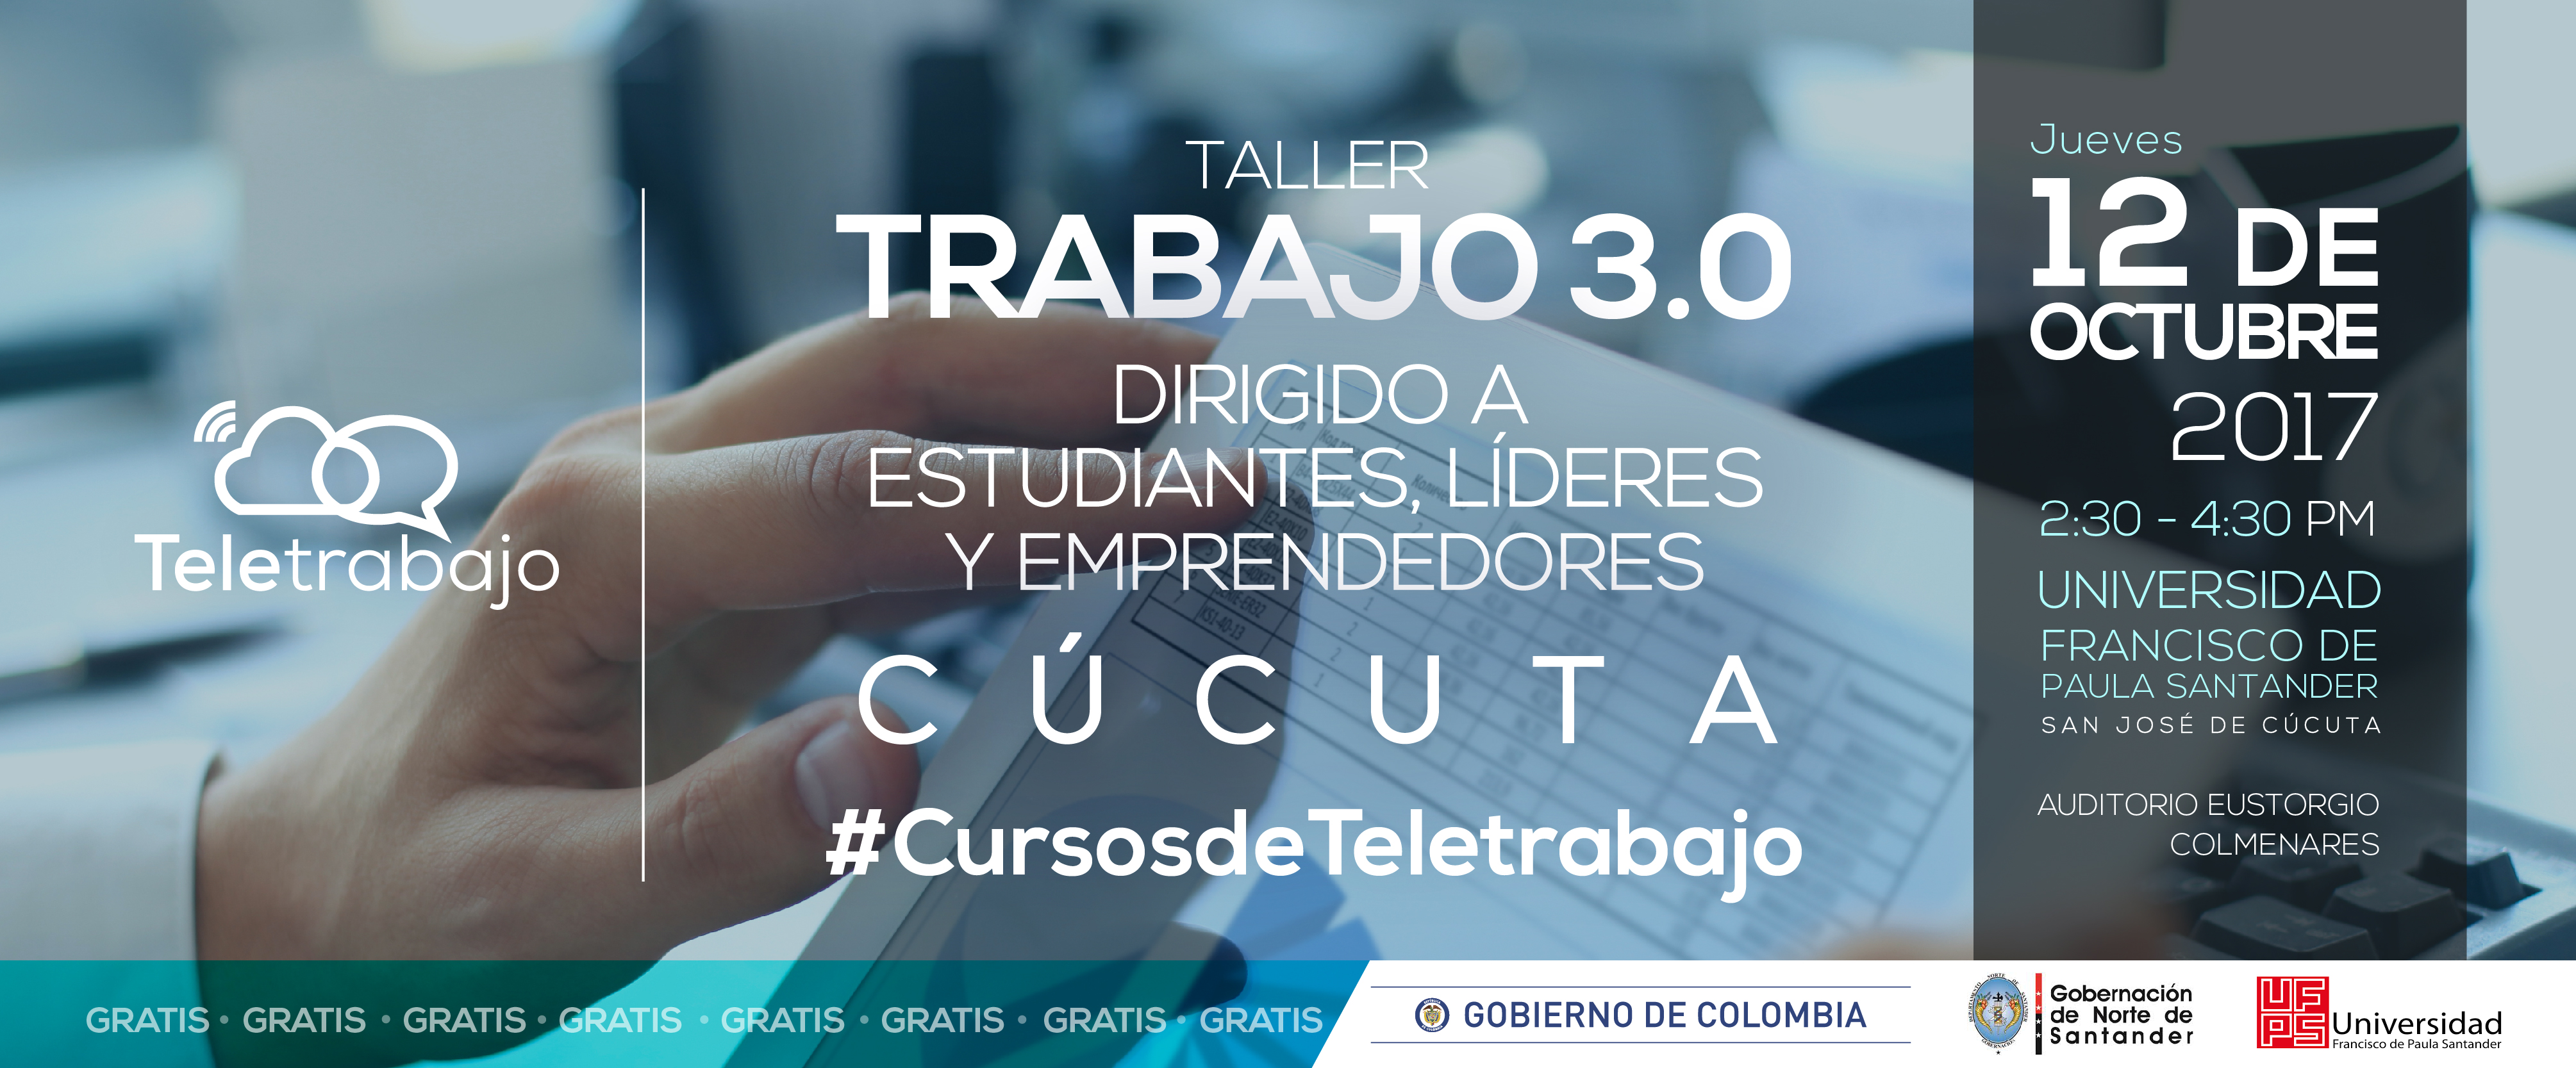 Estudiantes líderes y emprendedores en Cúcuta conocerán el Teletrabajo